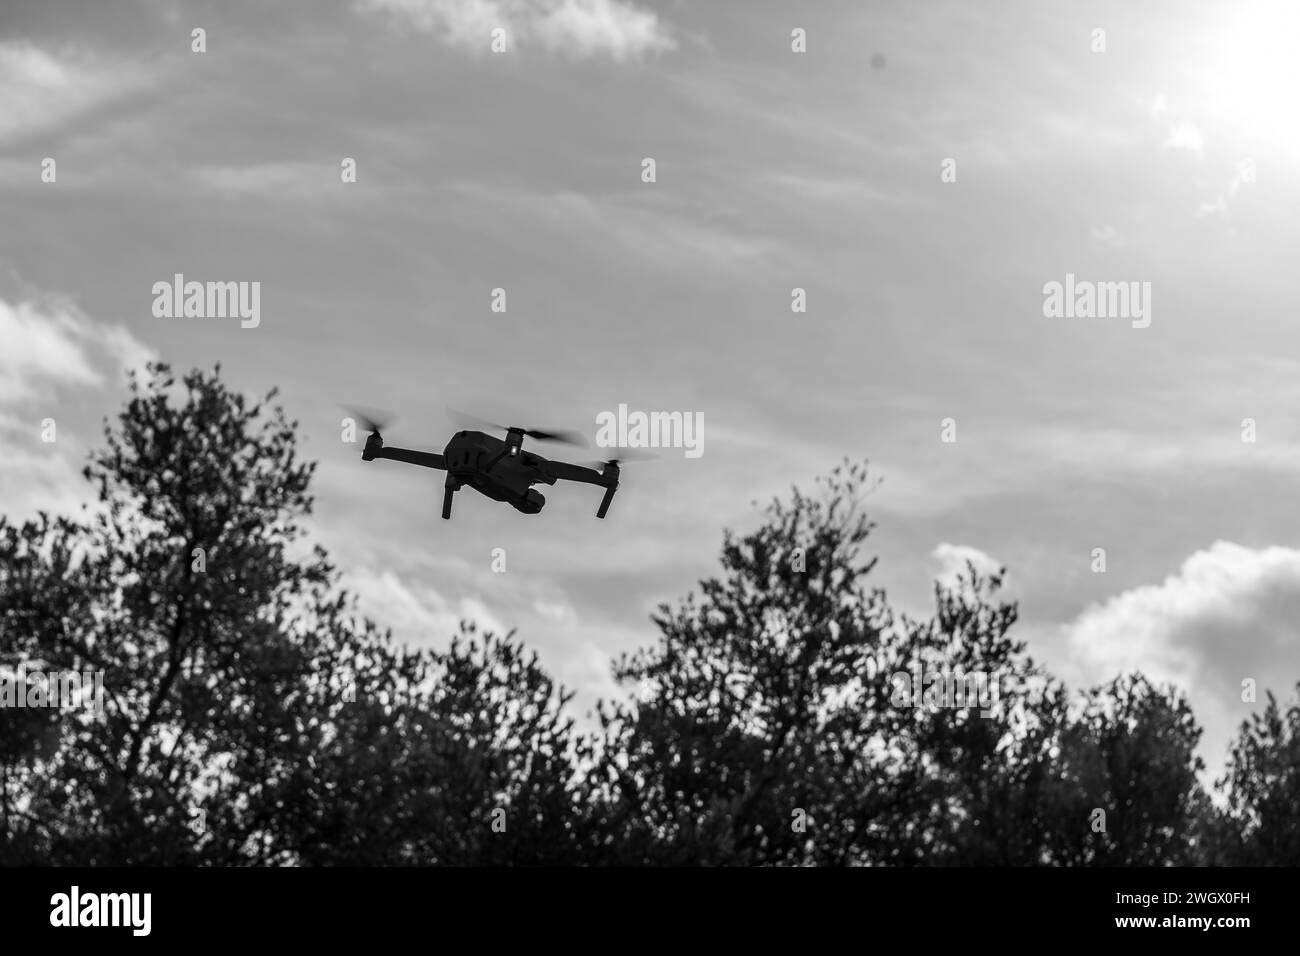 Photo de drone fpv et stabilisé custom et DJI type mavic et Inspire ansi que de Course de drone racing Foto Stock